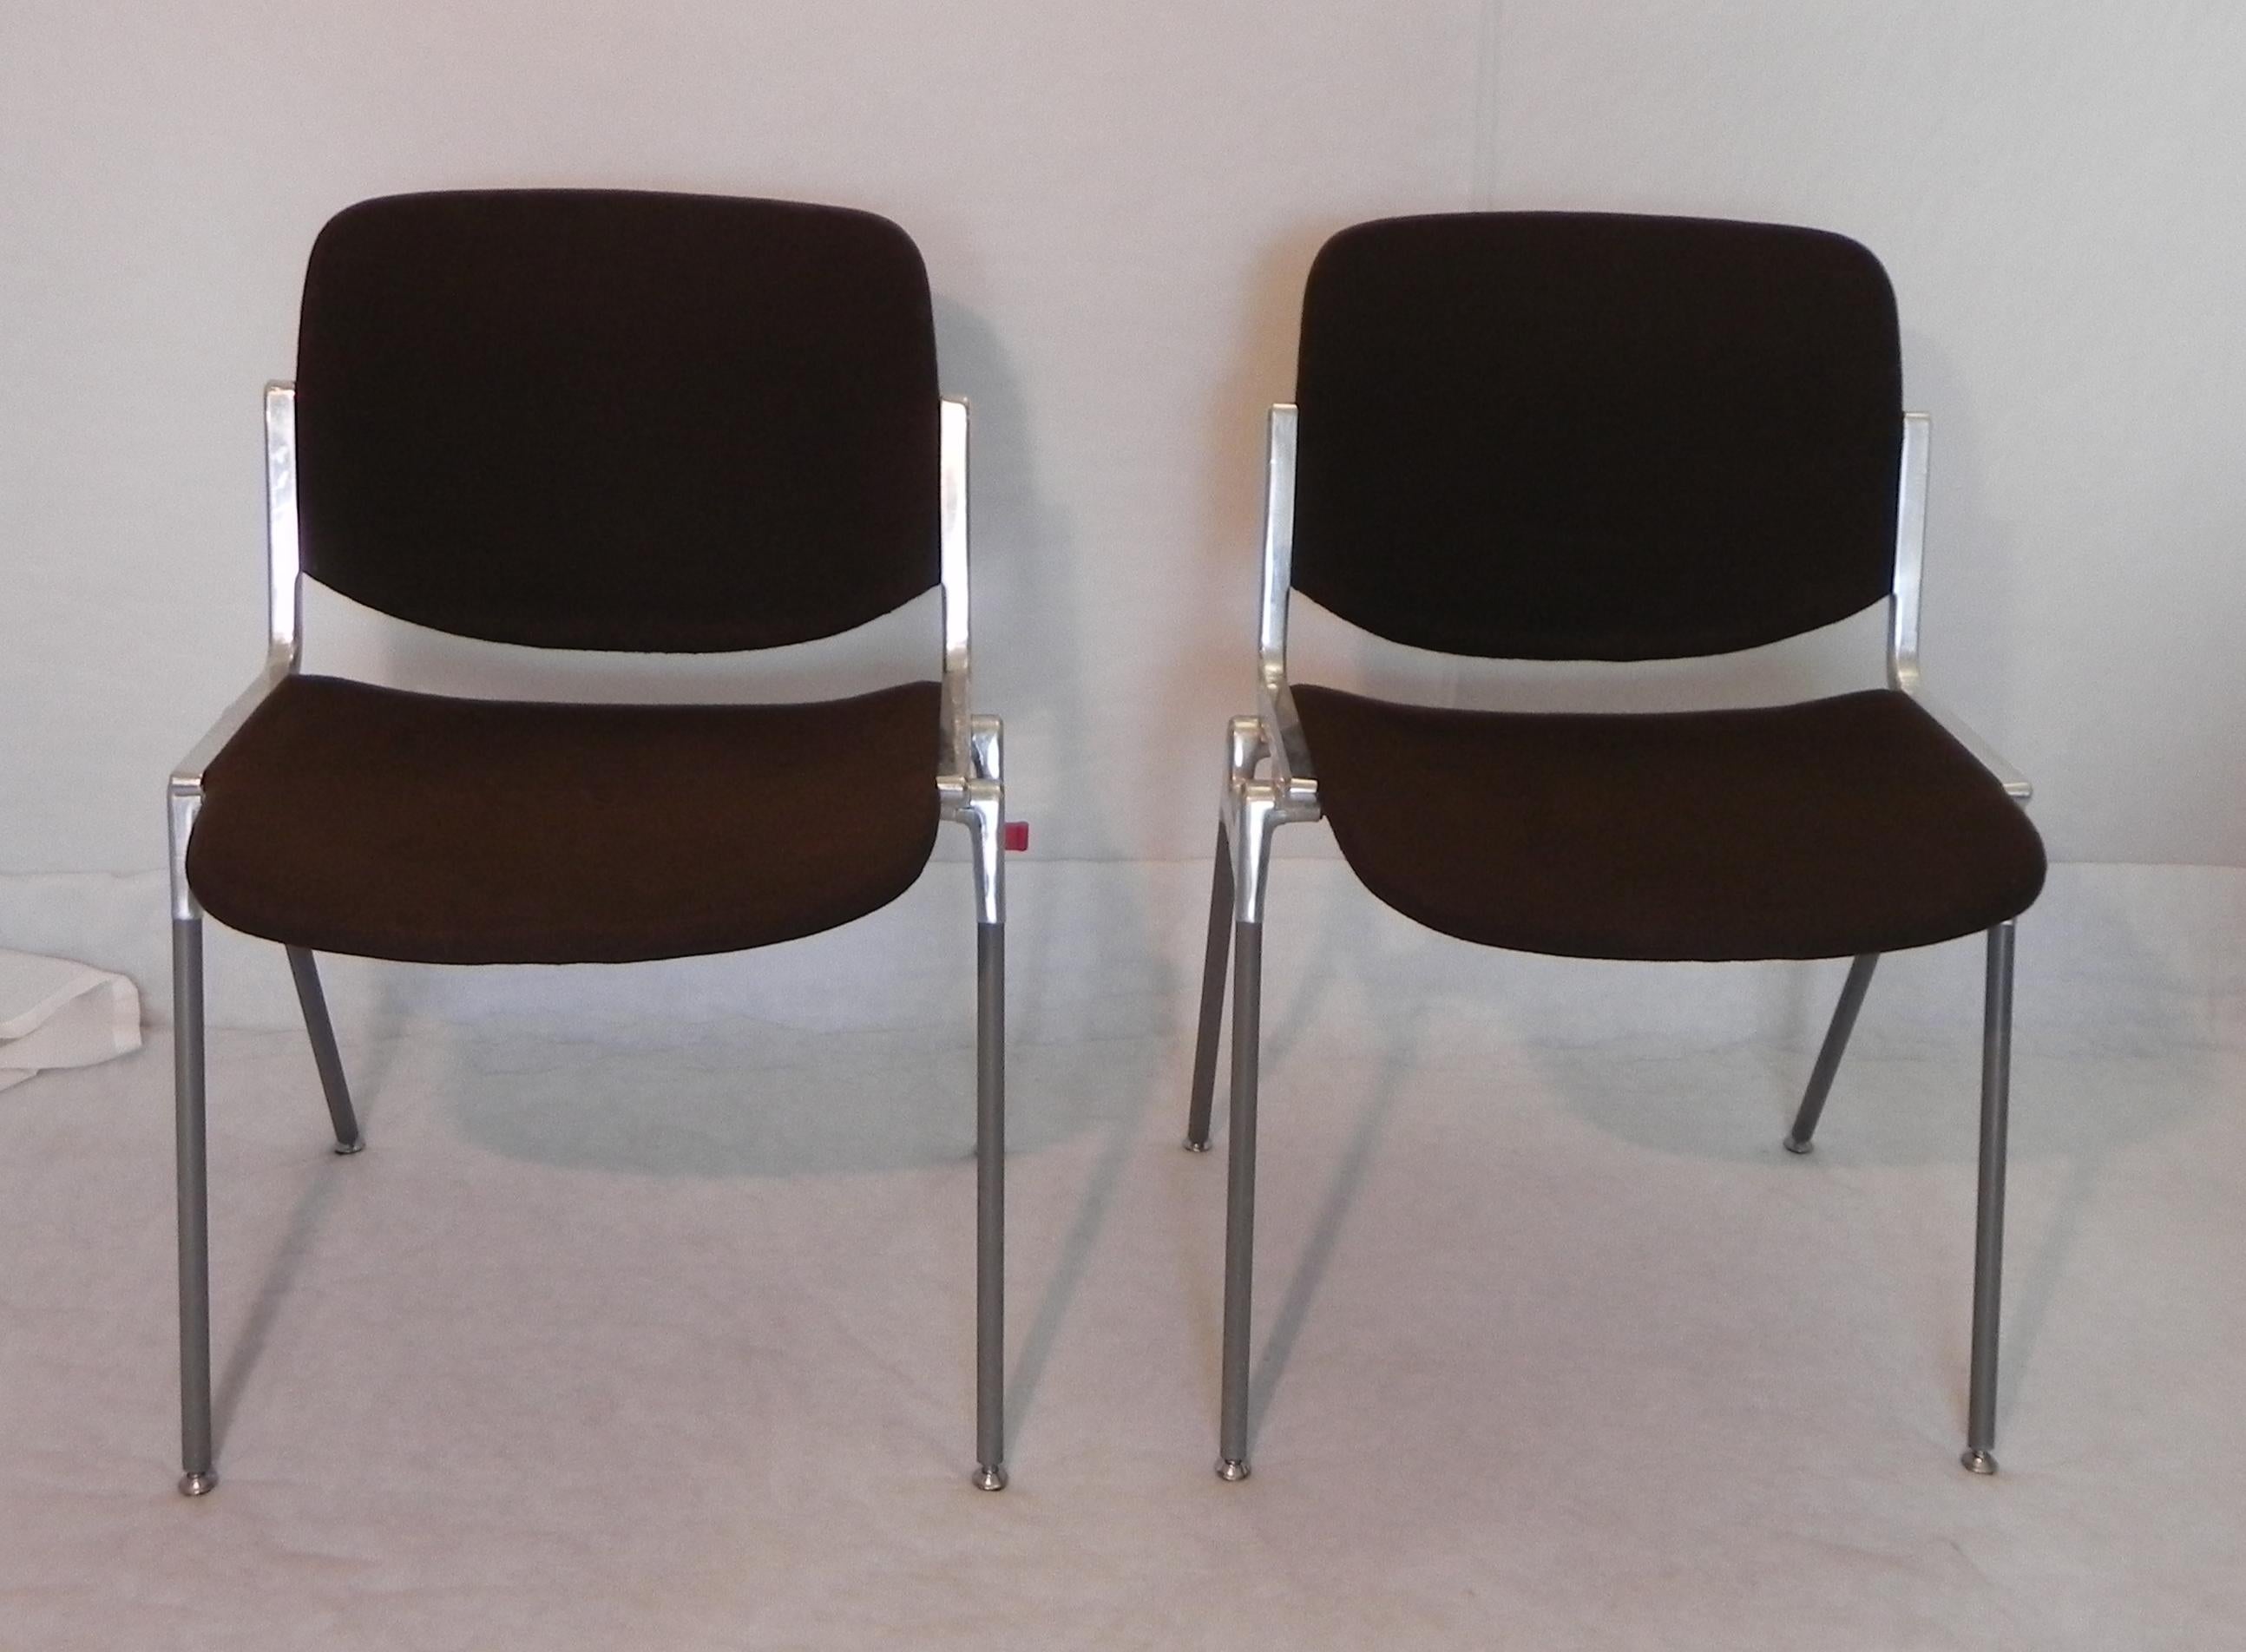 sedie dsc 106, Anonima castelli, by Giancarlo Piretti. anni 70 struttura in alluminio fuso robustissima. seduta in legno rivestita di tessuto cotone drill, colore Caffe'. resistentissimo. le sedie si possono impilare o agganciare tra loro. inoltre